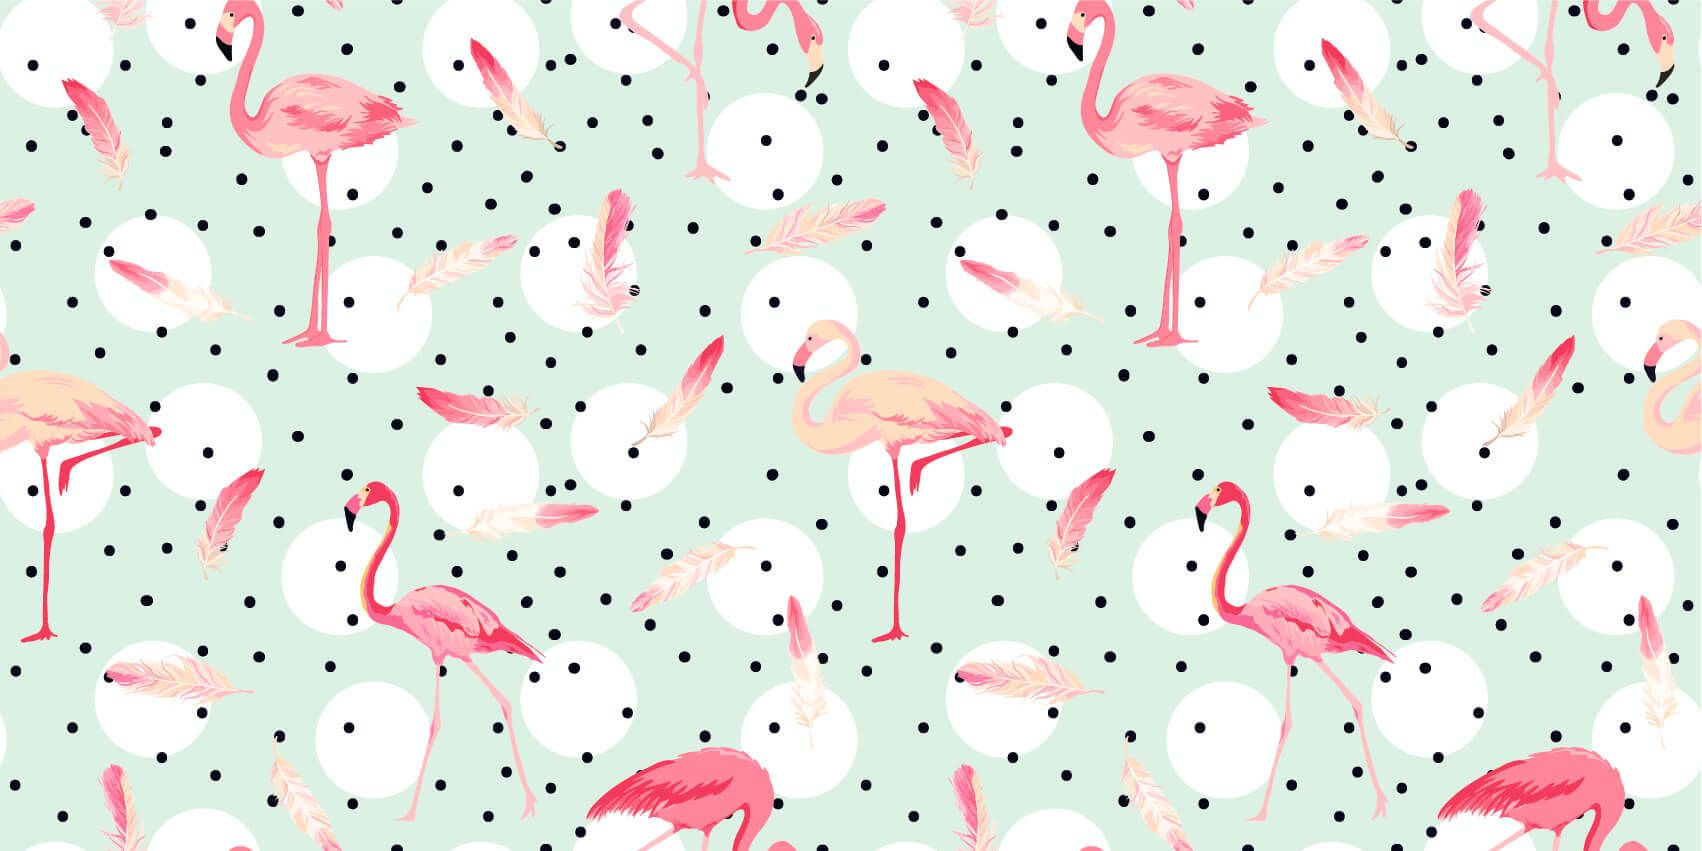 Kinderbehang - Flamingo's en veren - Kinderkamer